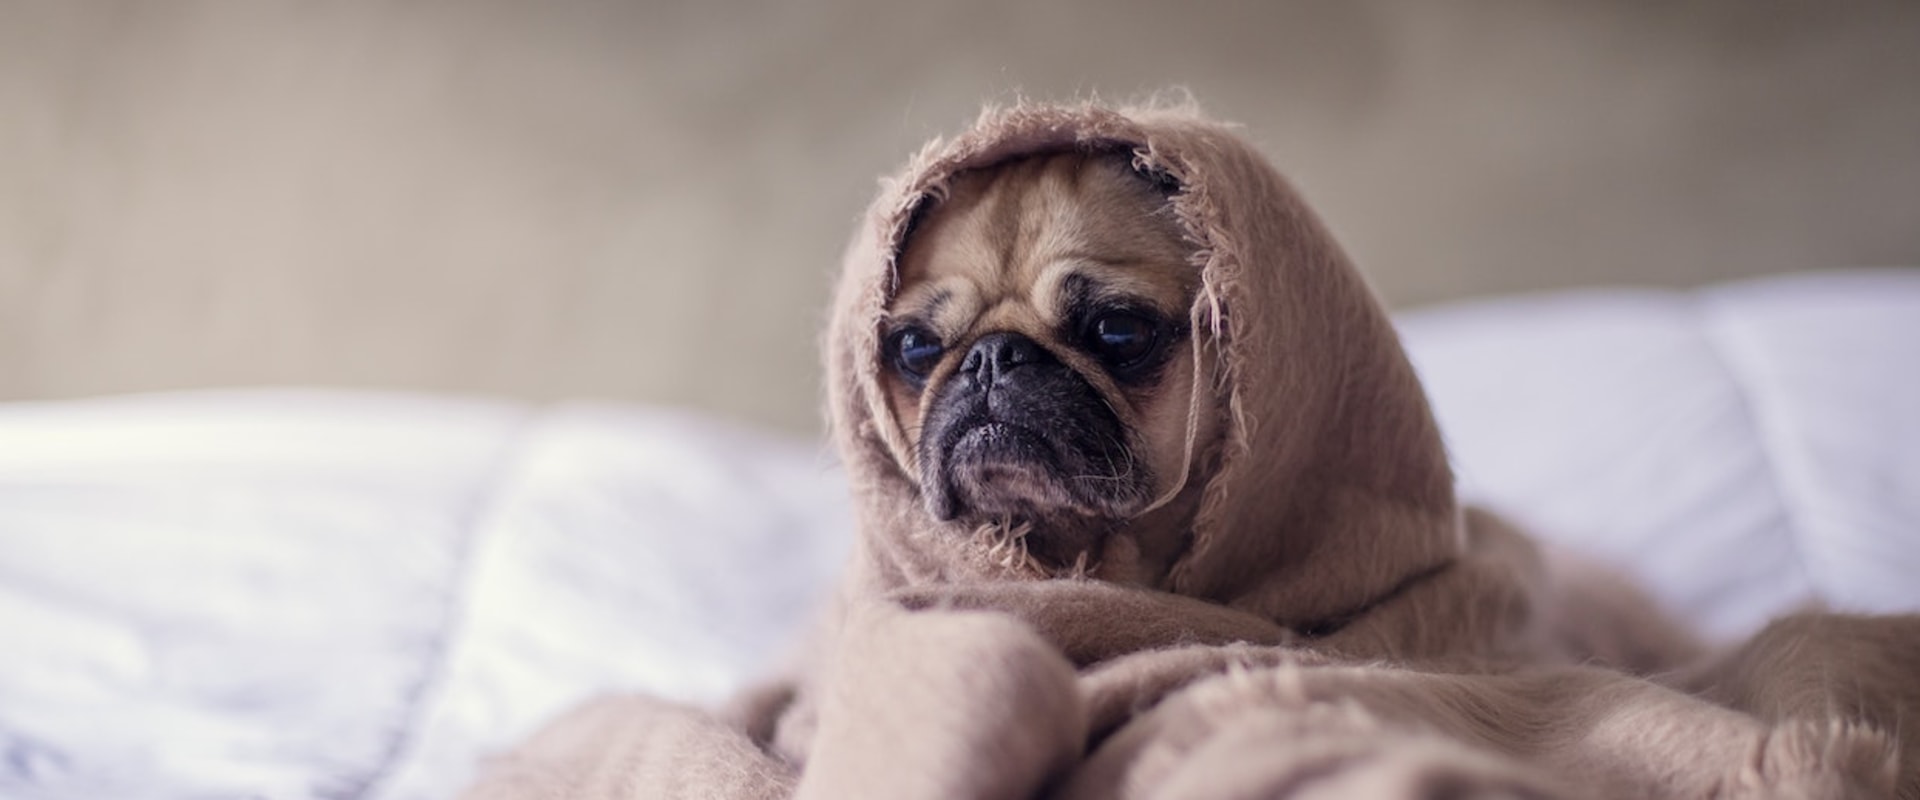 Is het oké om een hond te bedekken met een deken?